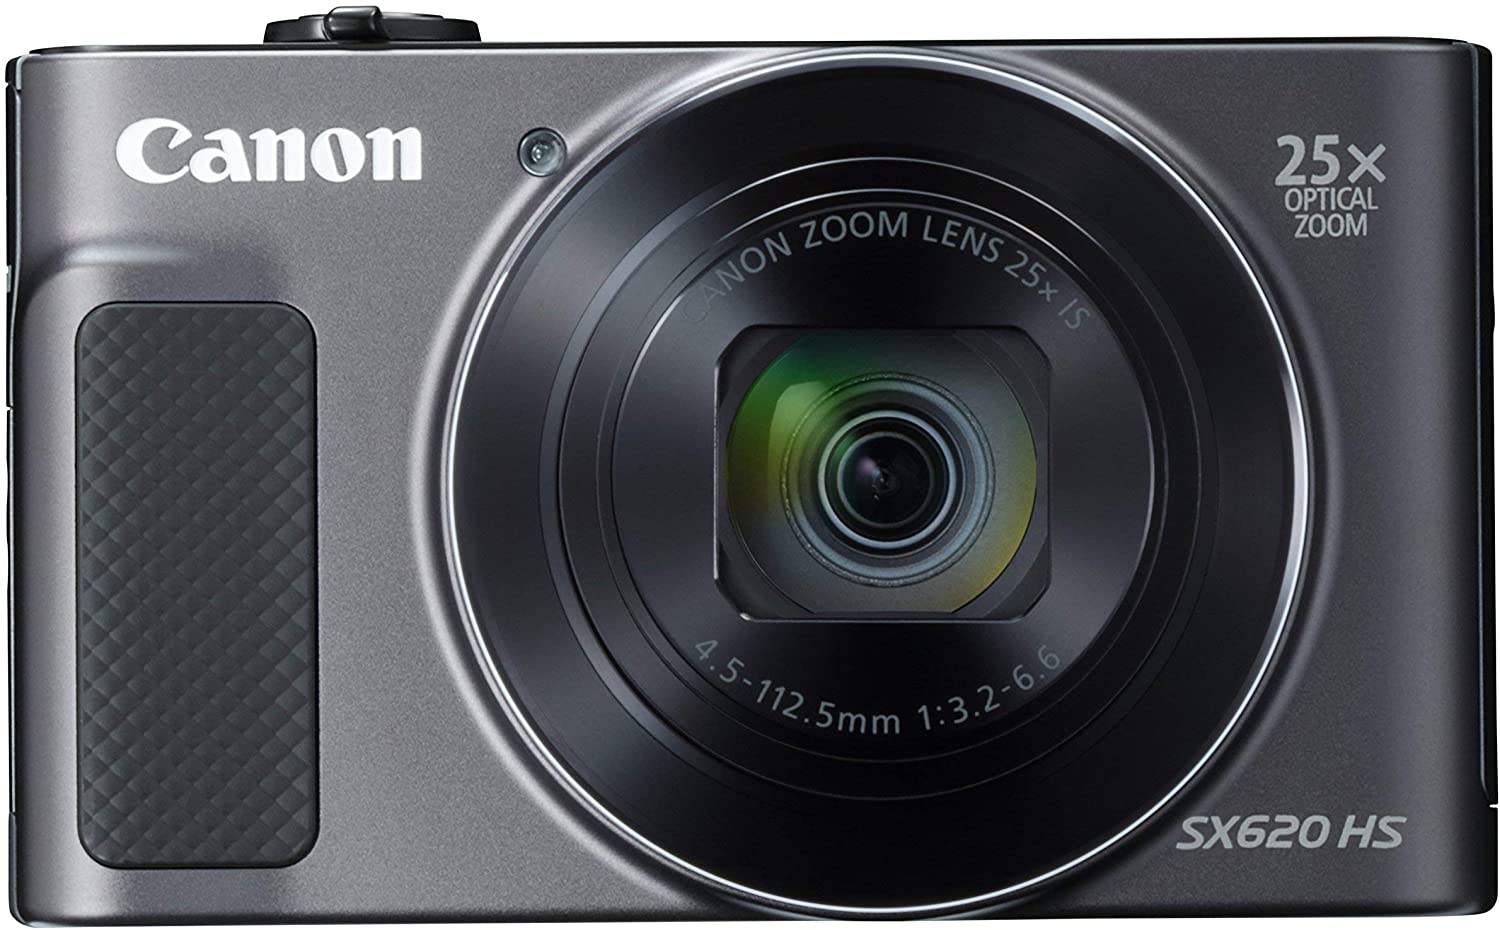 Canon キヤノン コンパクトデジタルカメラ PowerShot SX620HS ブラック 光学25倍ズーム PSSX620HS(BK